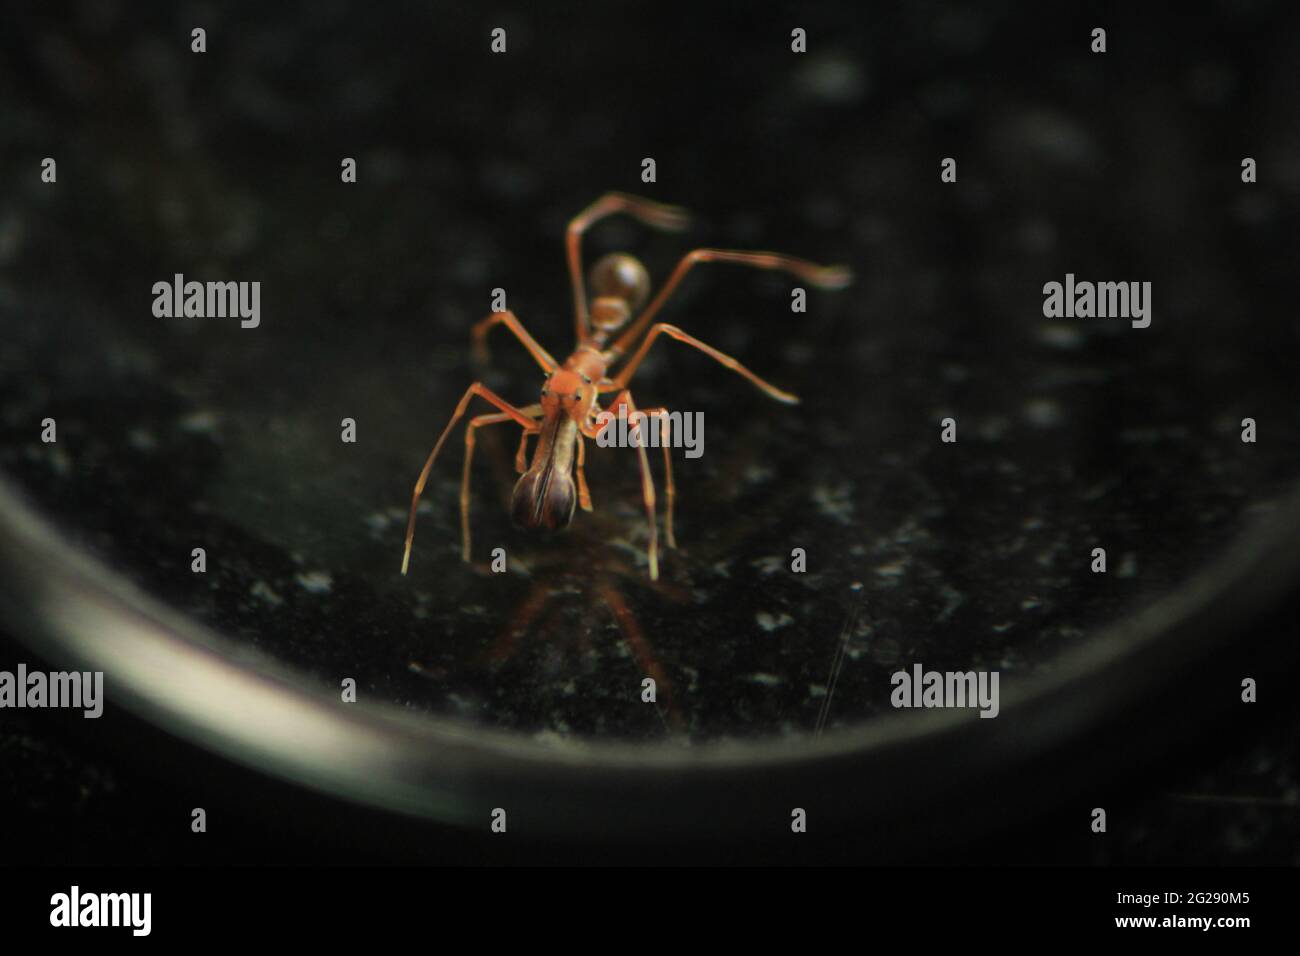 Araignée Ant - insectes - l'araignée a évolué en formes anses afin de cohabiter dans une colonie anante et de se nourrir sur d'autres fourmis. Araignée déguisée. Banque D'Images